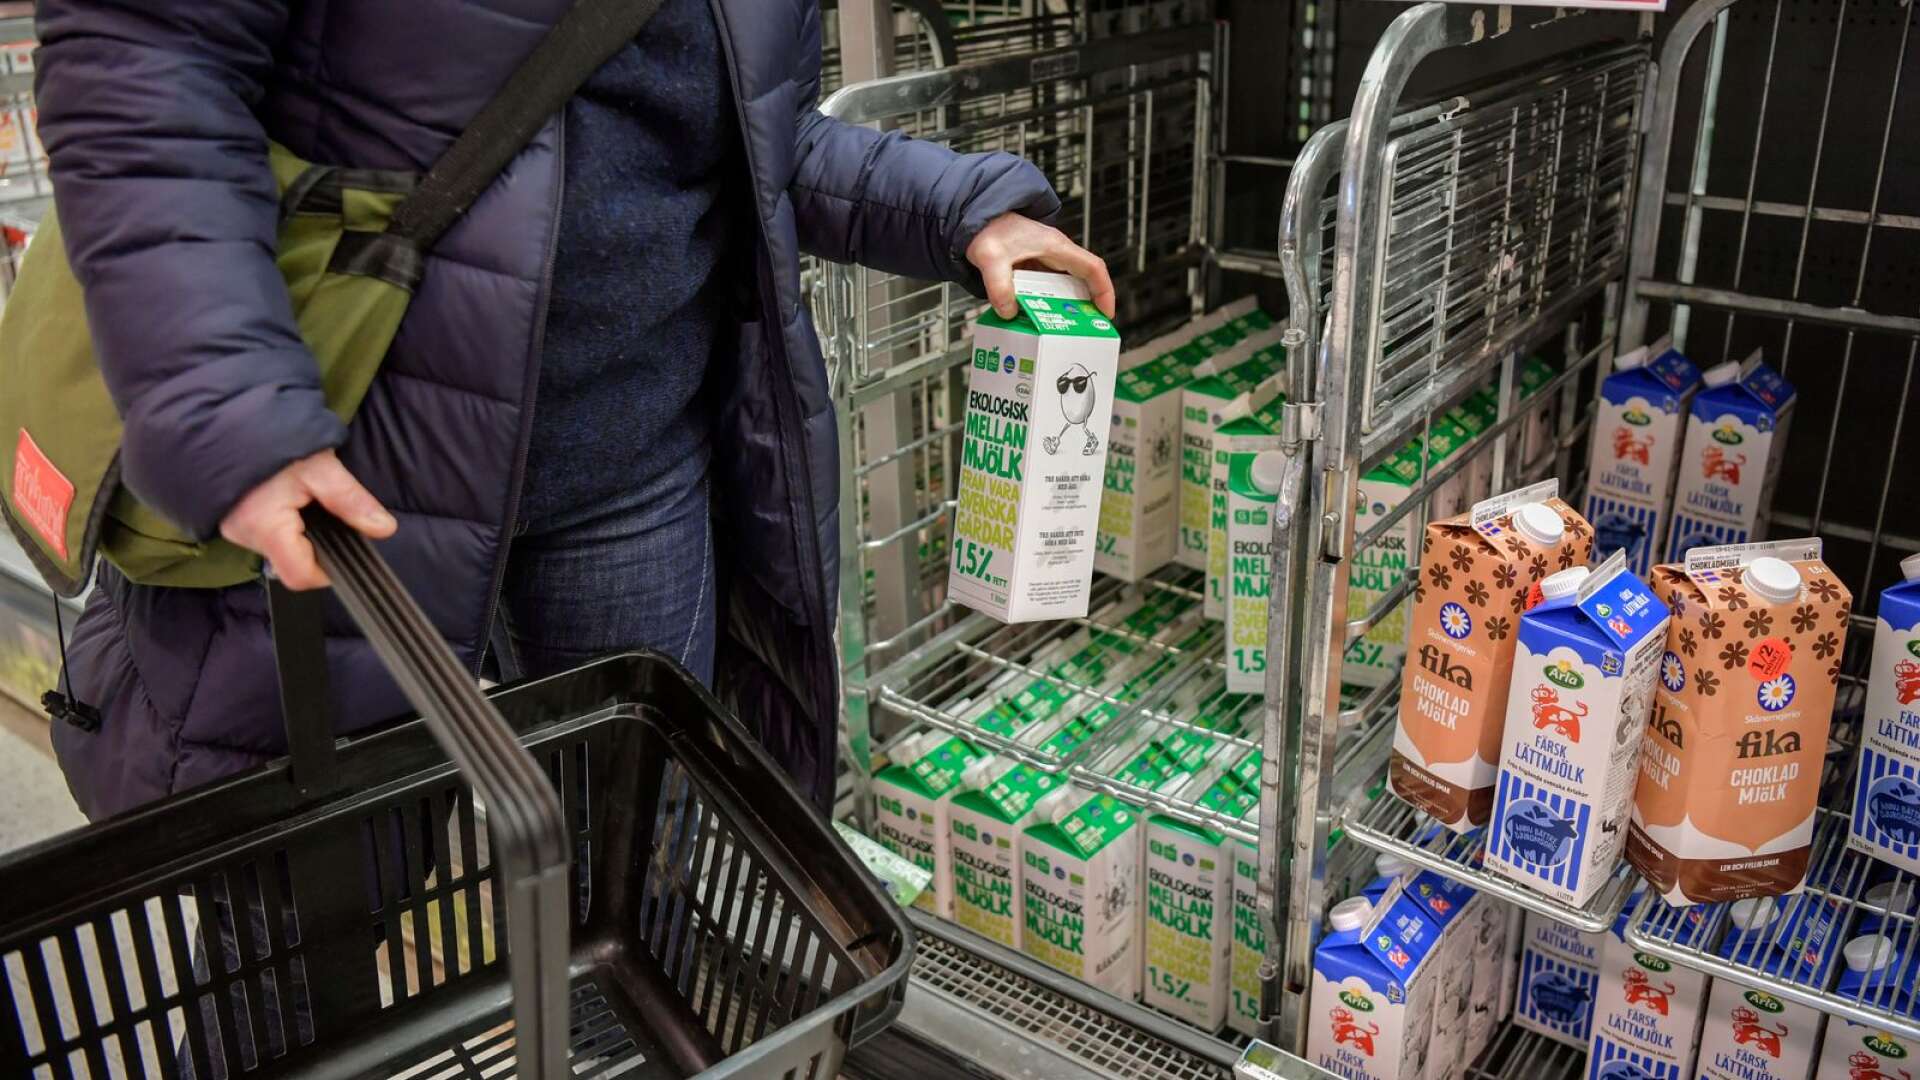 En butiksägare i Skövde får böter för att inte ha anmält livsmedelsverksamheten till miljönämnden. Bilden har inget direkt samband med artikeln.